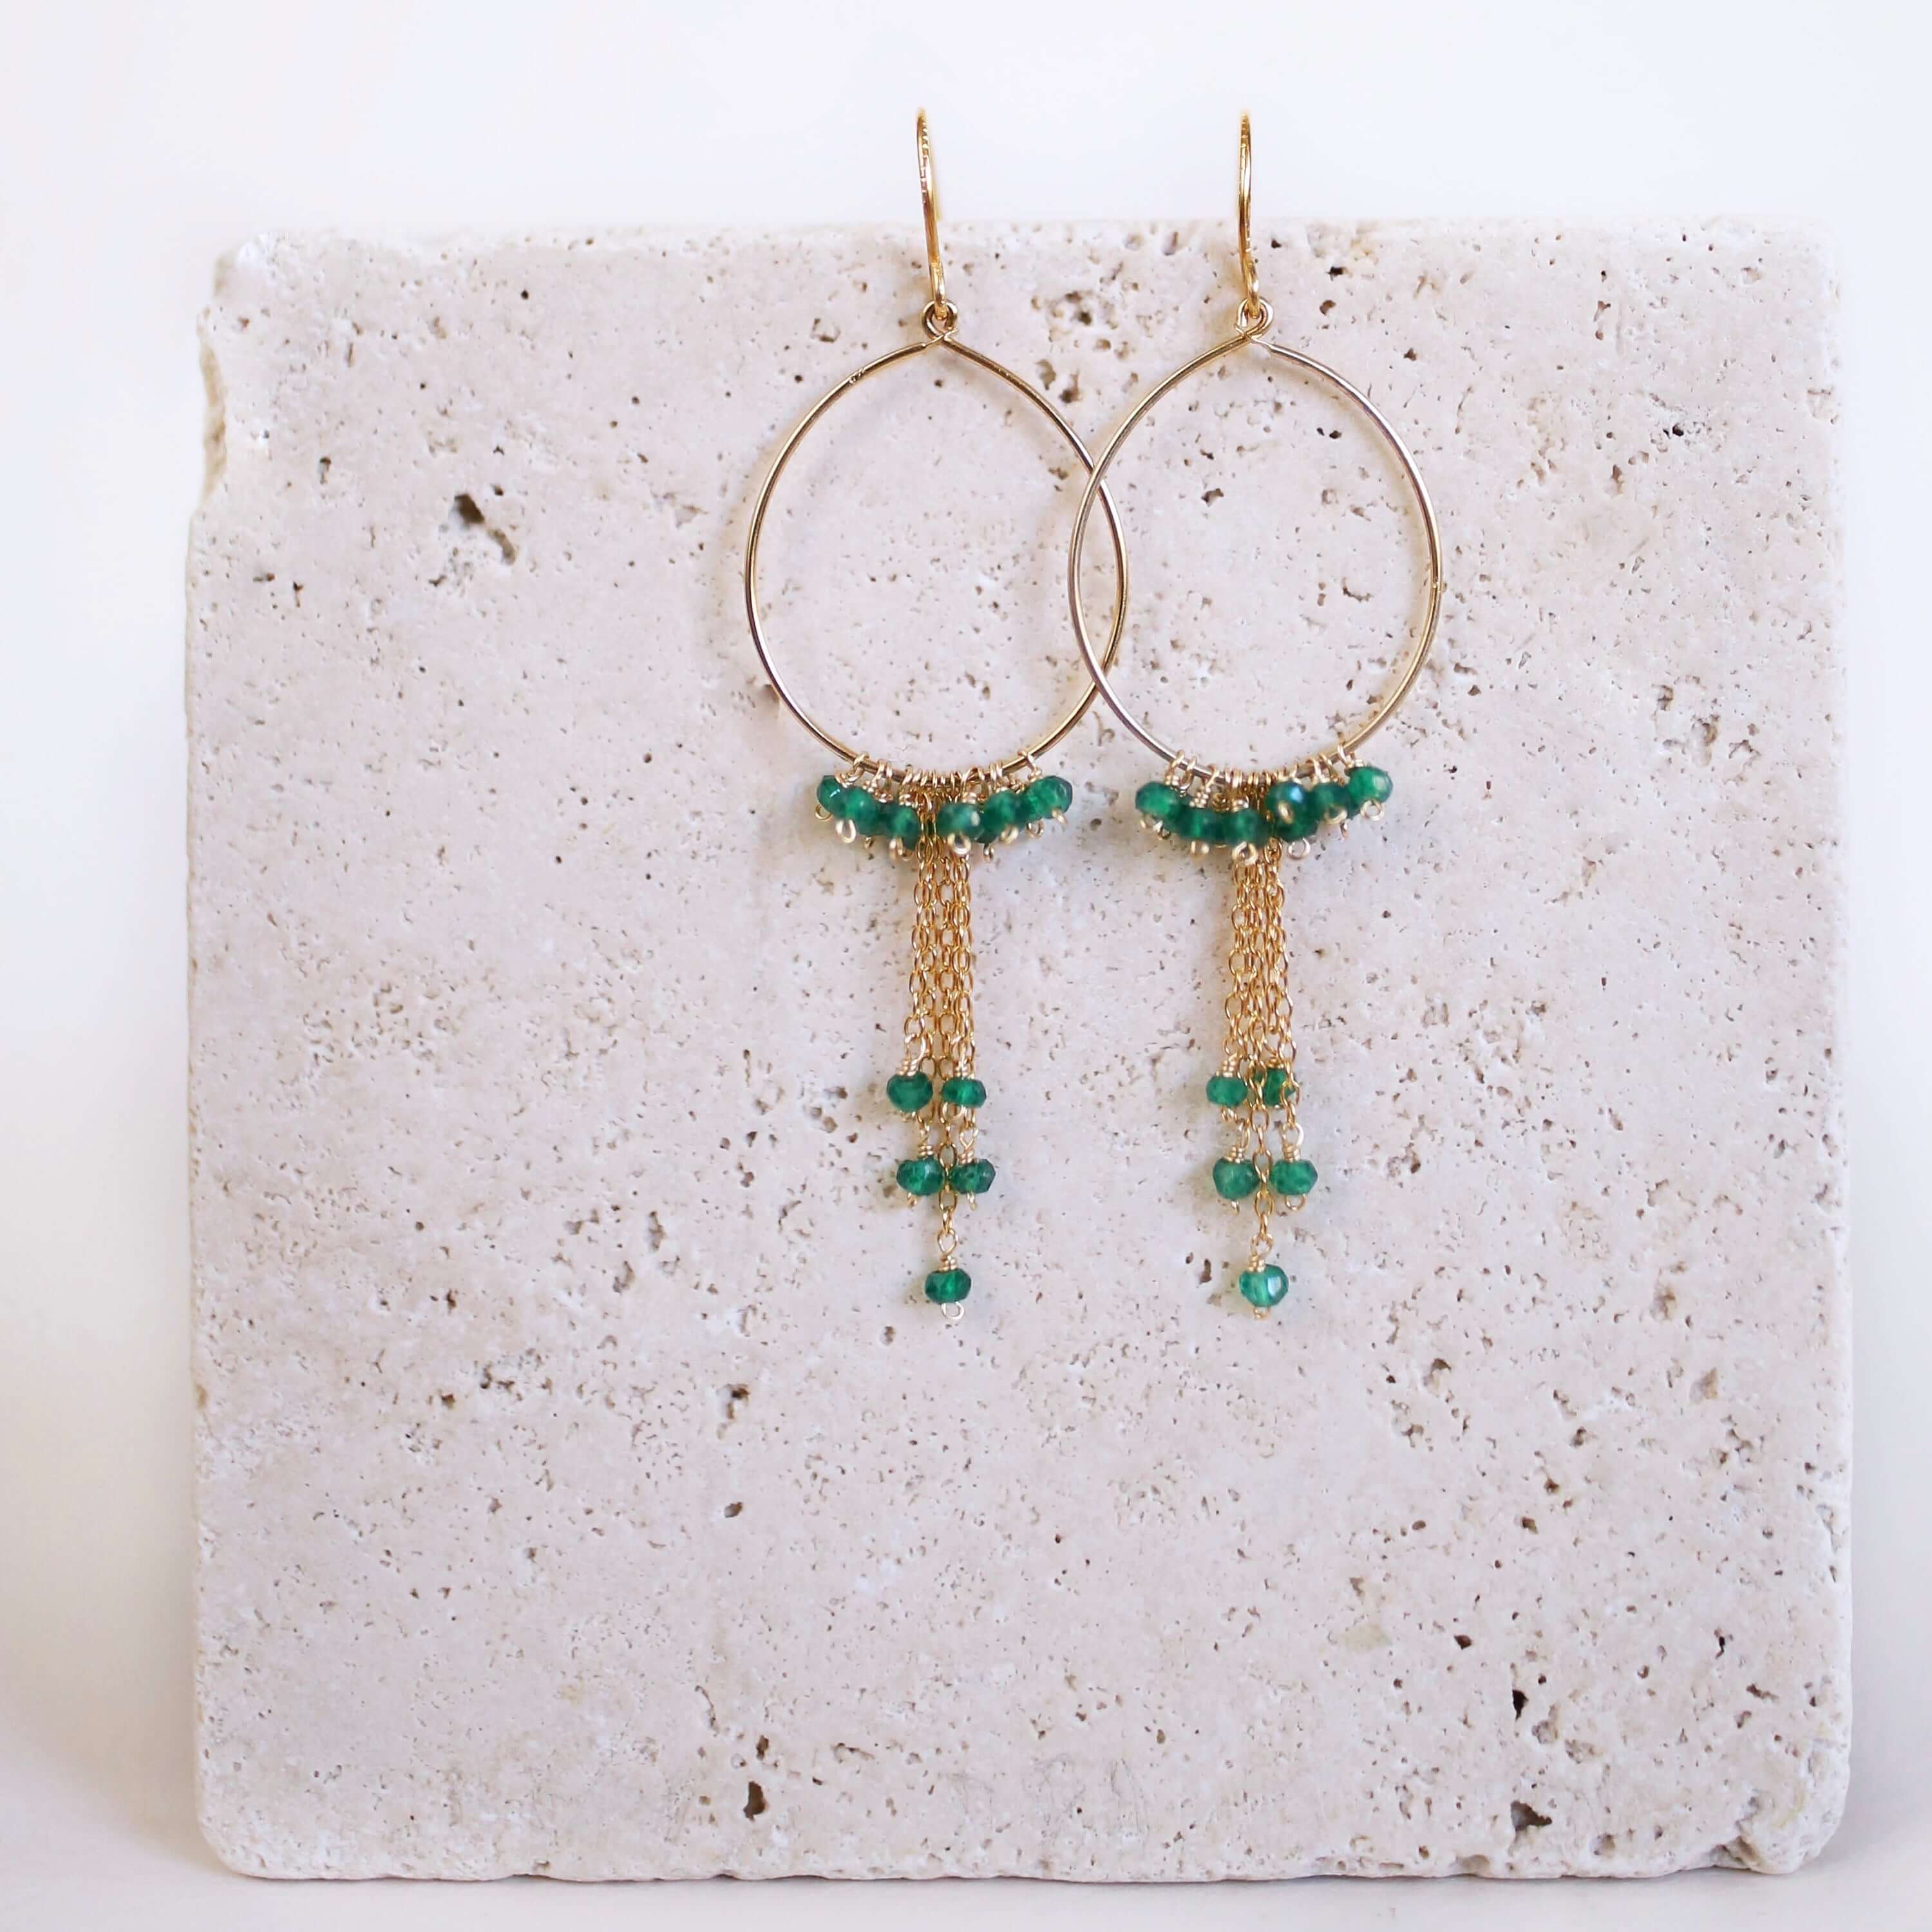 Handmade Green Apatite Swing Hoop Earrings with 14k Gold Plating